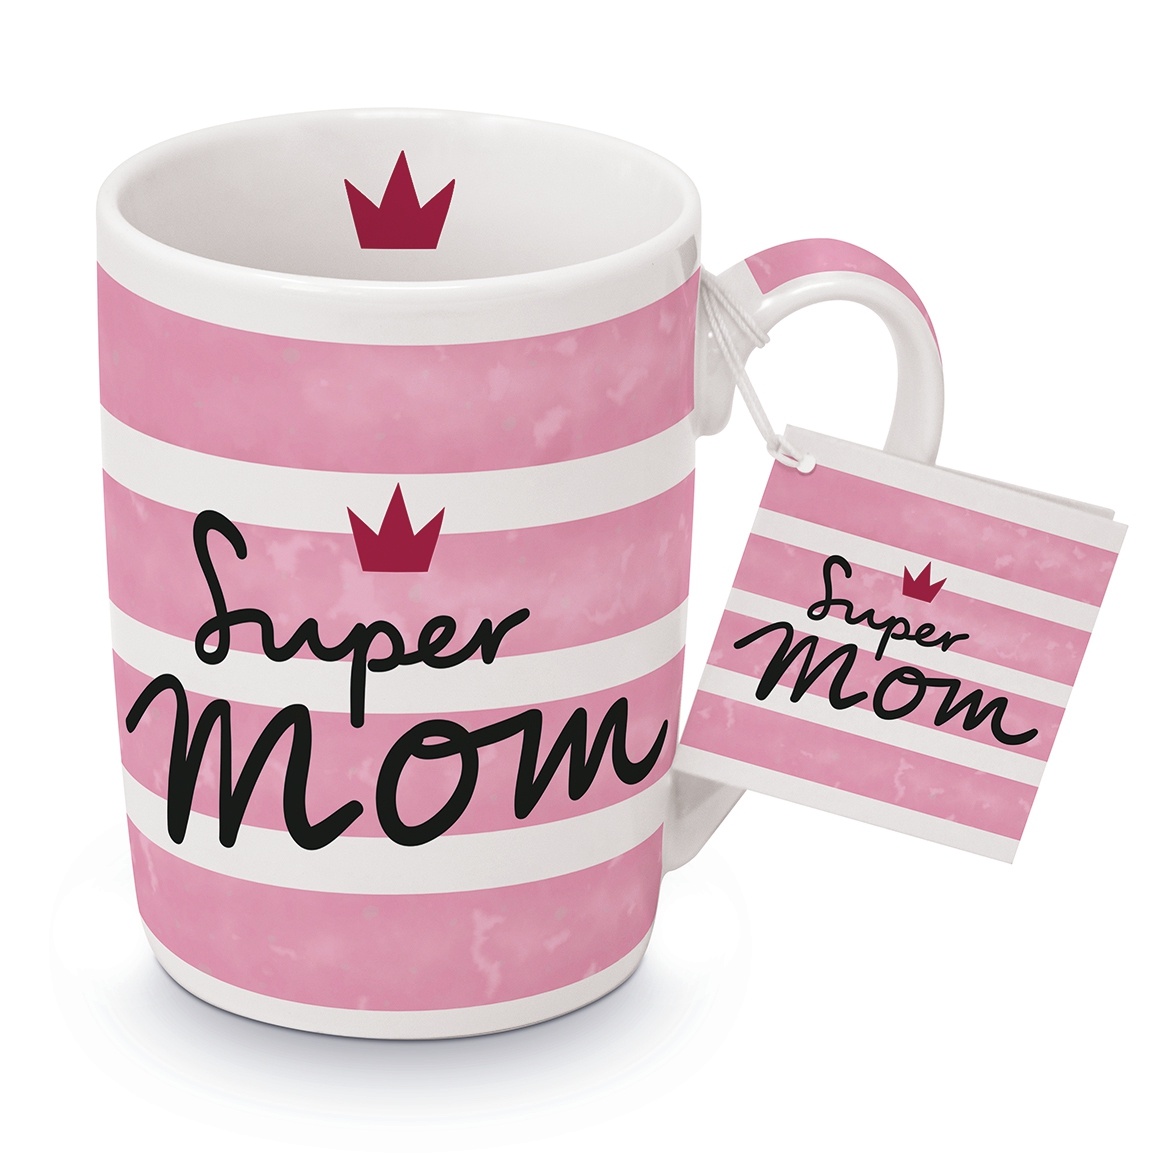 Puchar Porcelany - Becher Super Mom